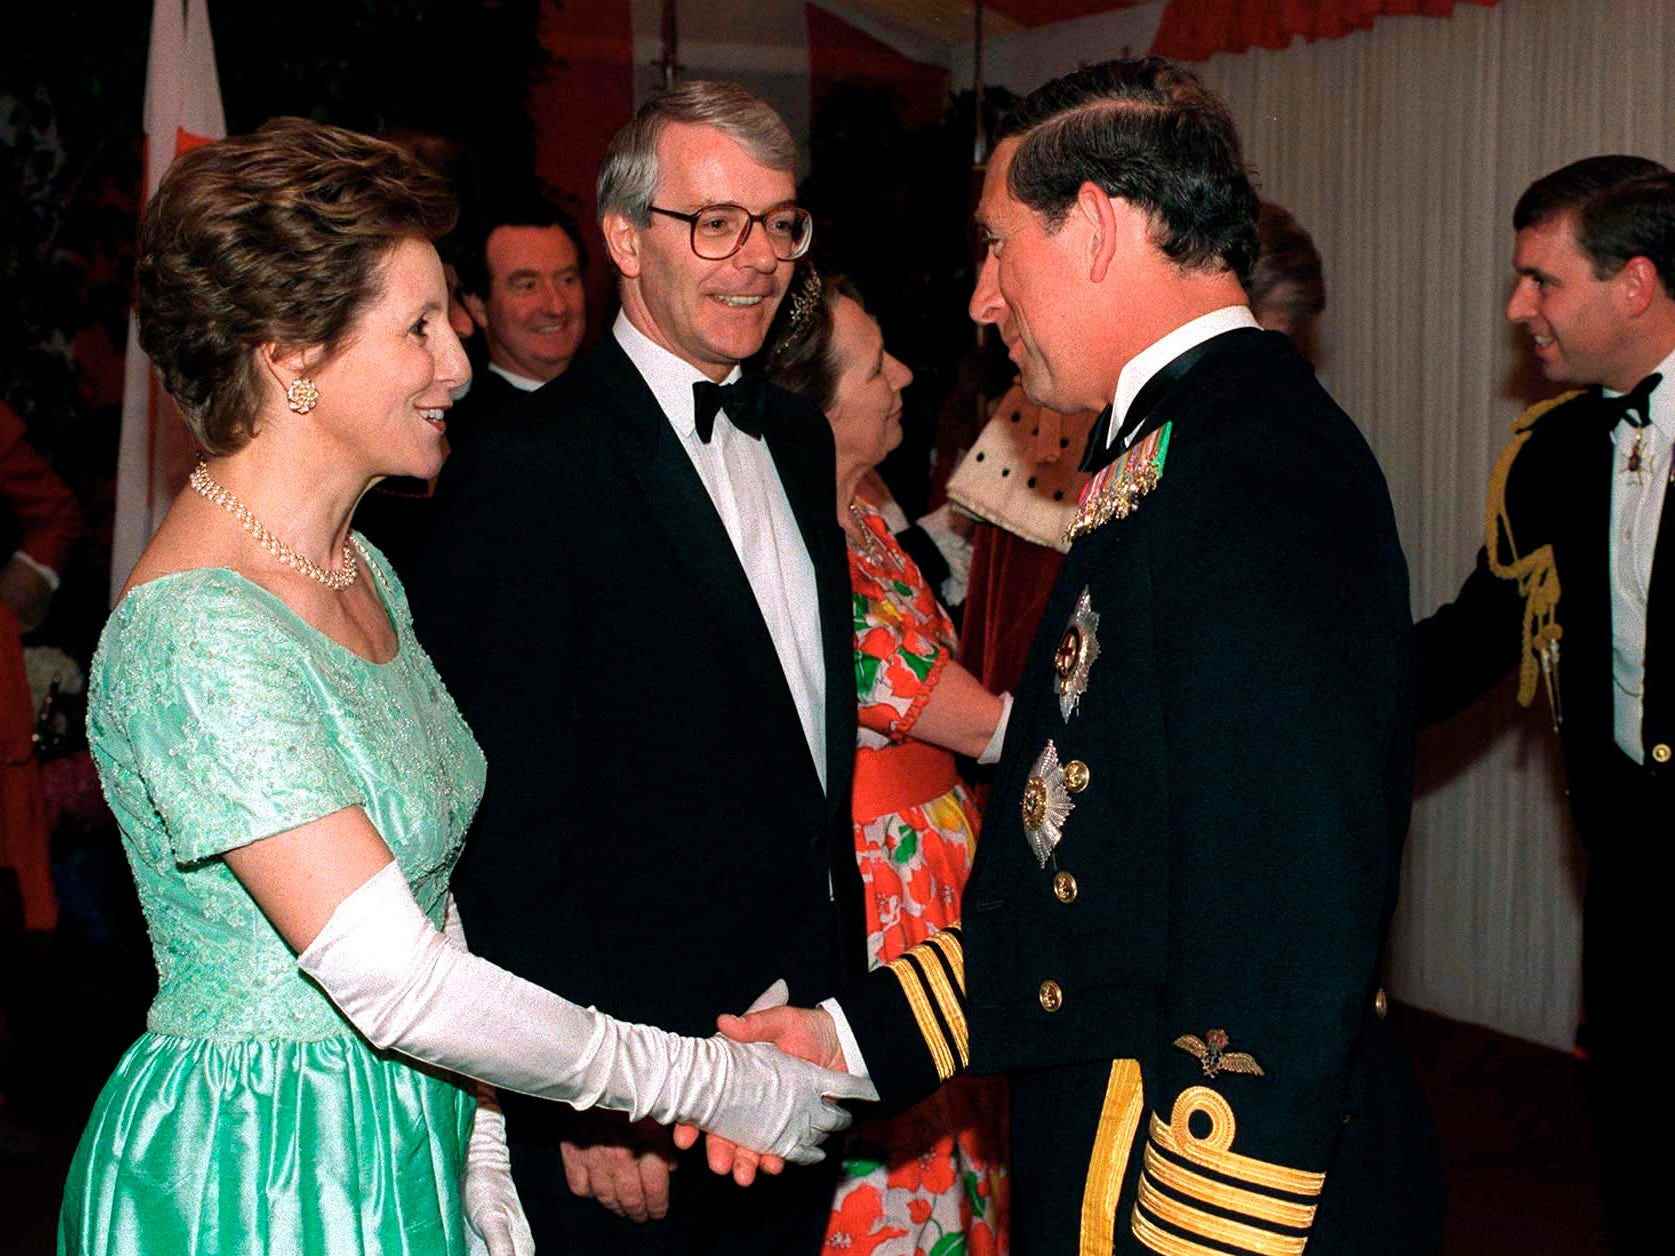 Bankett der Staatsoberhäupter in Guildhall, London zum Gedenken an den 50. Jahrestag des Kriegsendes in Europa.  Prinz Charles wird von Premierminister John Major und Ehefrau Norma begrüßt.